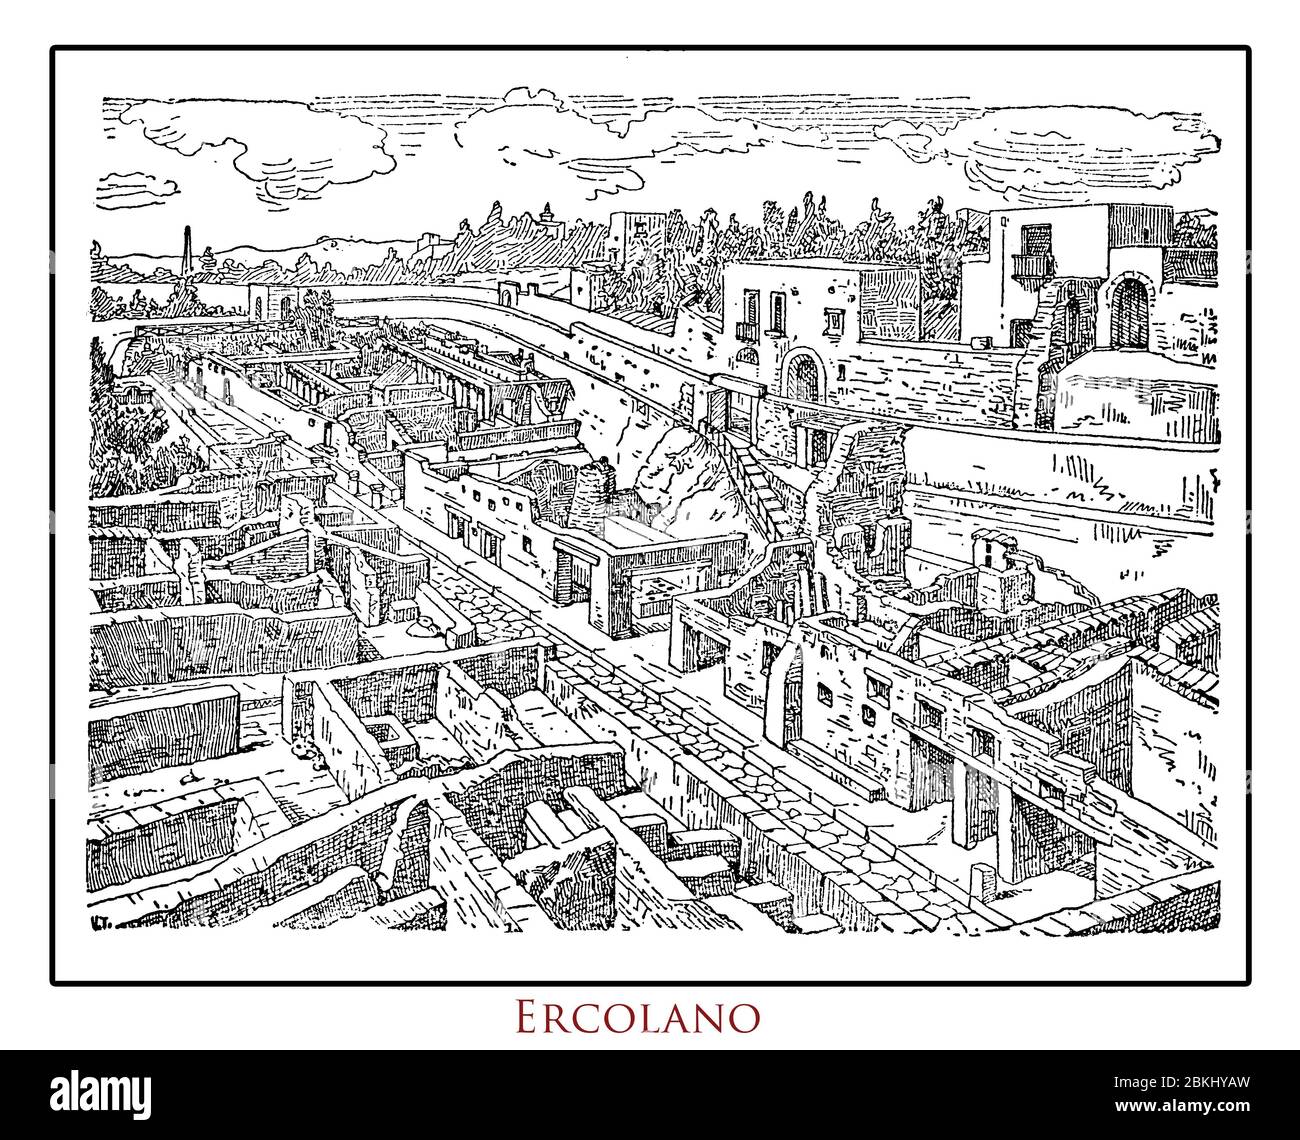 Tableau illustré d'un lexique italien vintage d'Ercolano (Herculaneom) détruit par l'éruption du Vésuve en 79 DC, ancien site archéologique romain près de Naples et de Pompéi Banque D'Images